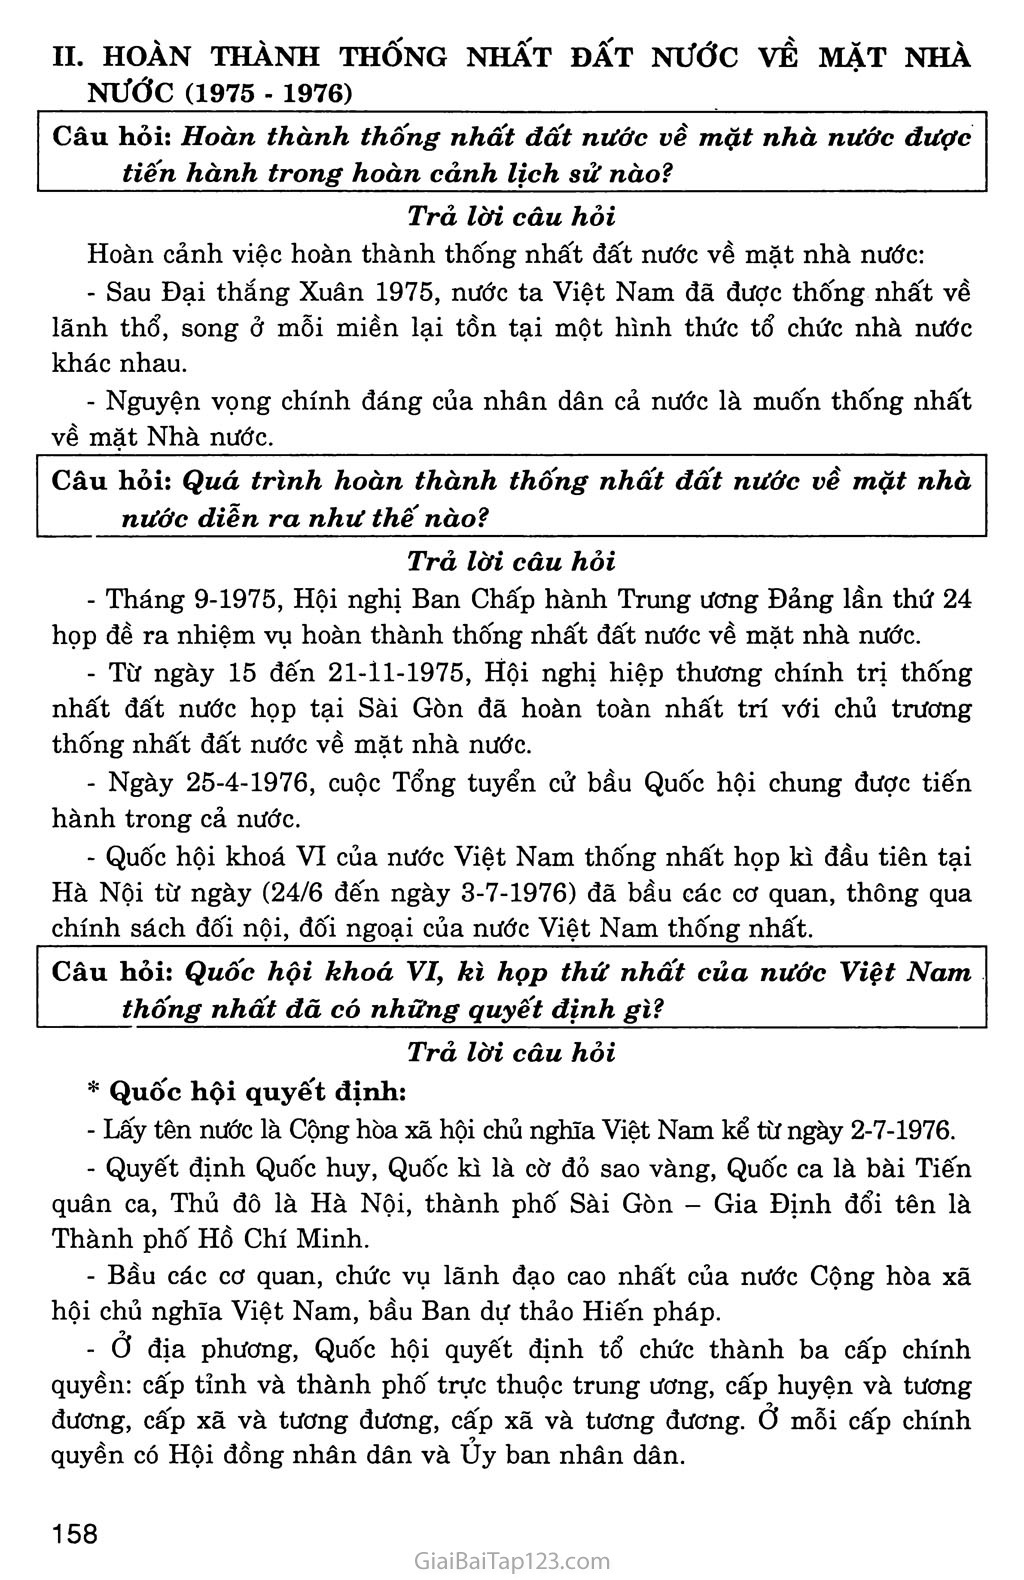 Bài 31: Việt Nam trong năm đầu sau đại thắng Xuân 1975 trang 2